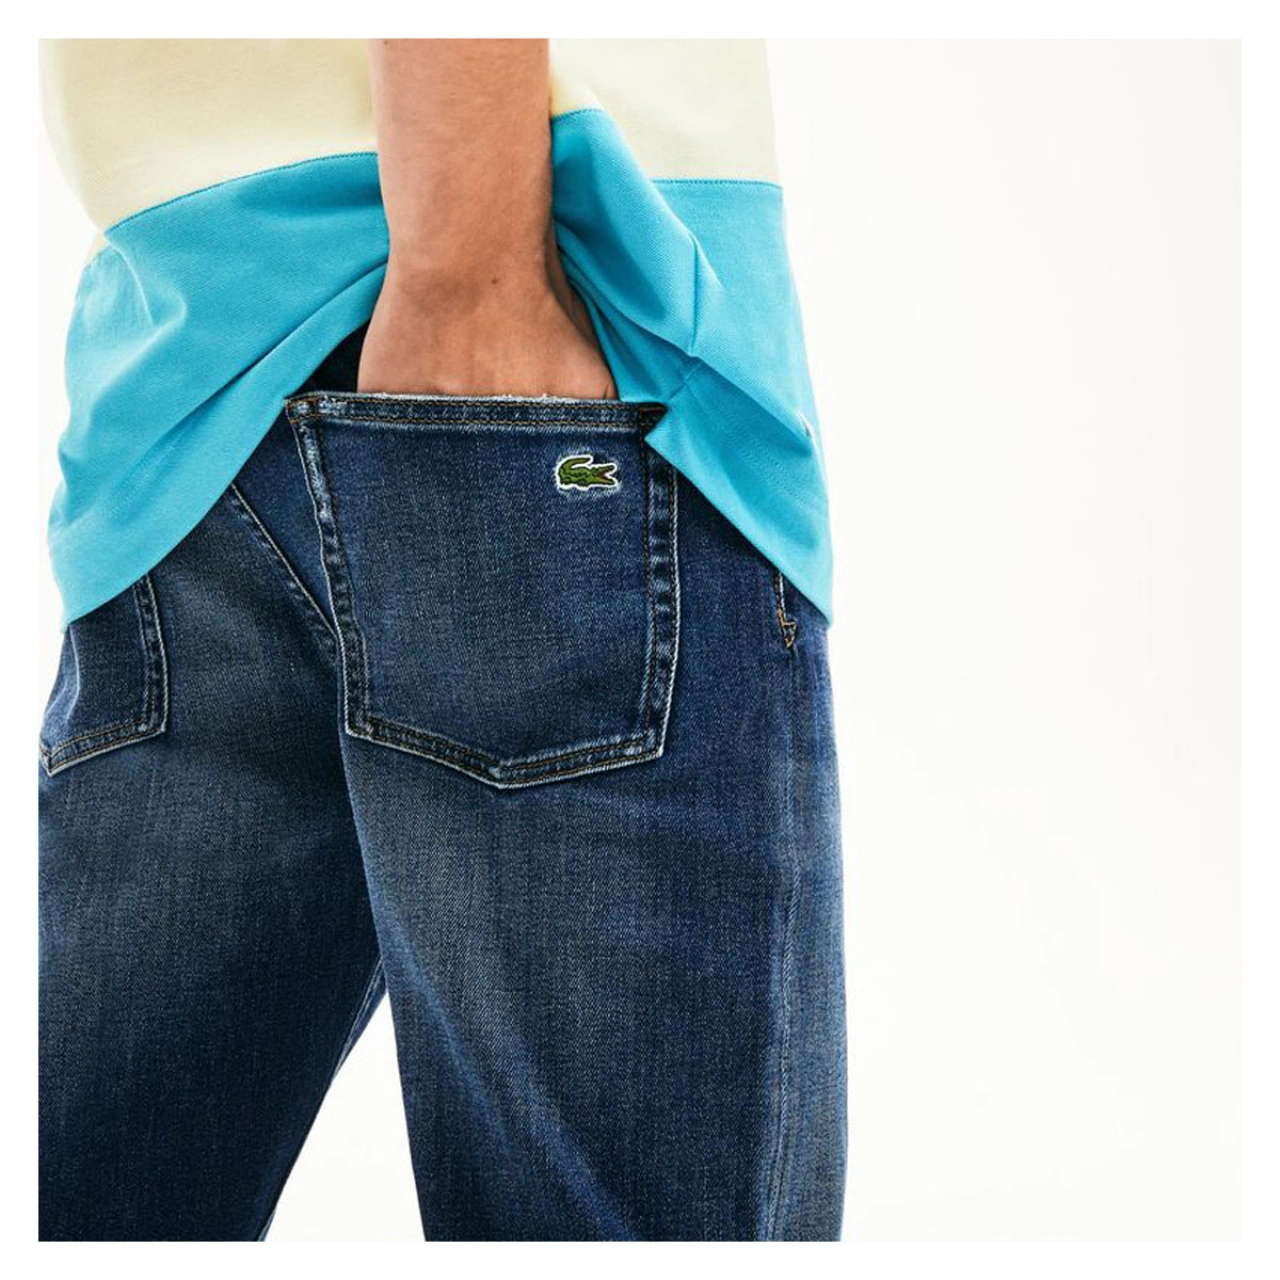 Ανδρικό Jeans παντελόνι - Lacoste - Antoniadis Stores